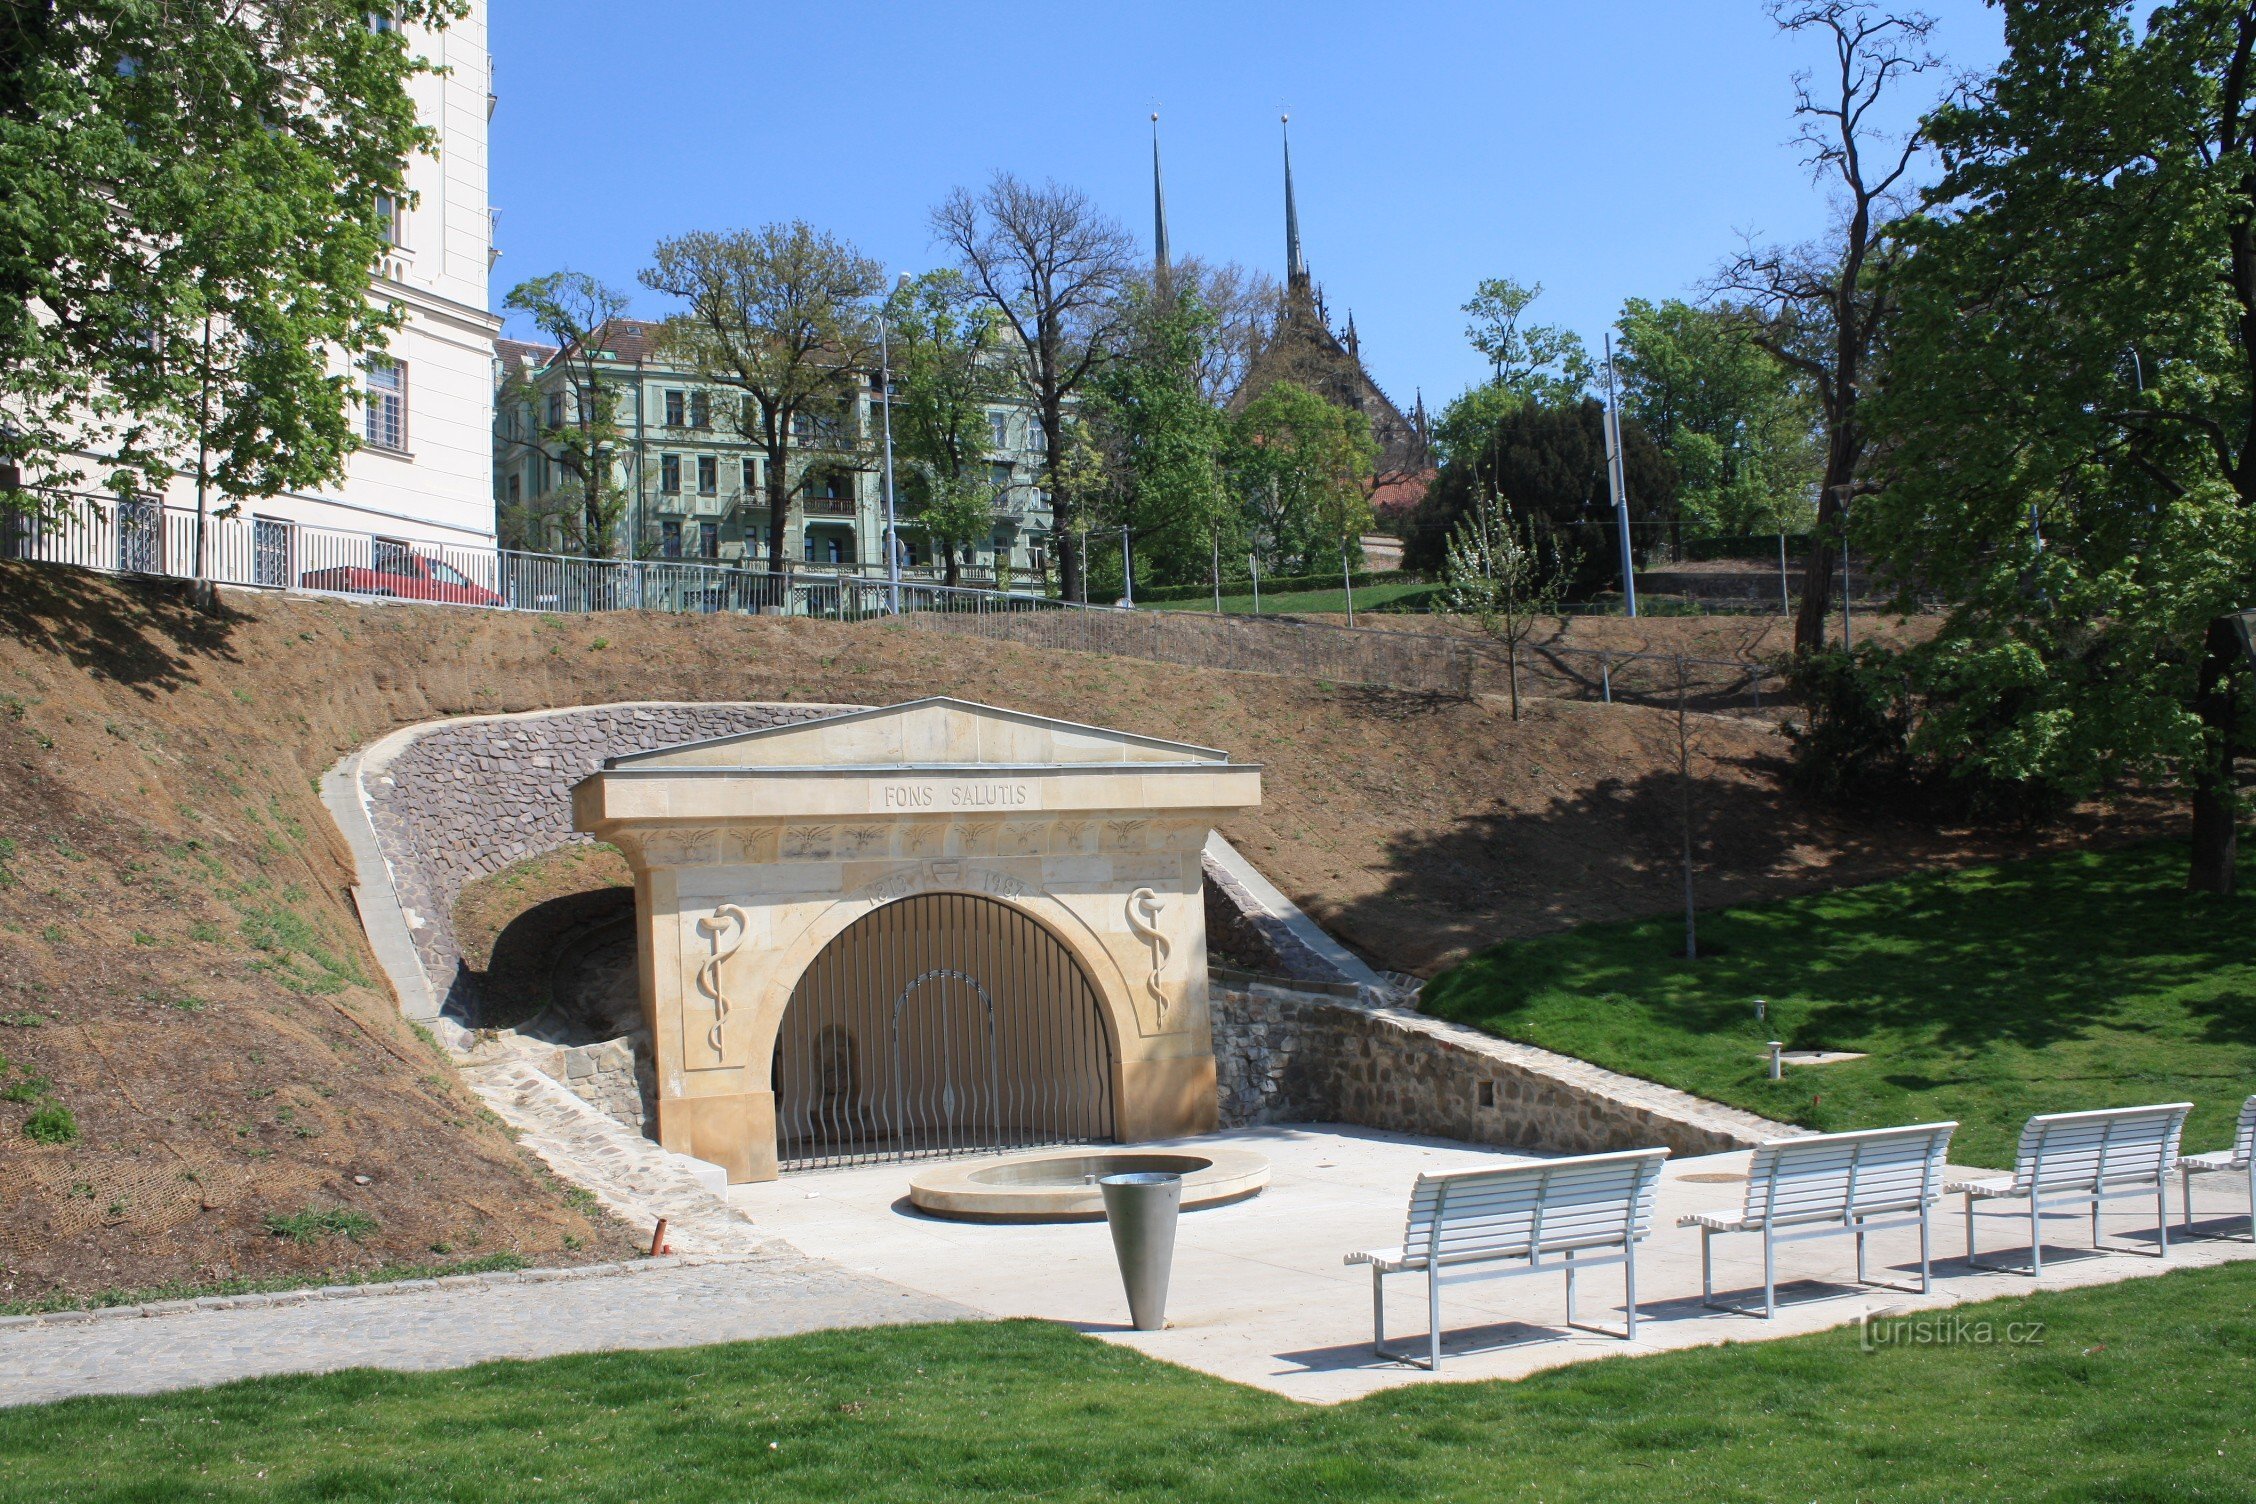 Park Studánka nakon revitalizacije s ampirskim objektom Fontana zdravlja (Fons Salutis)